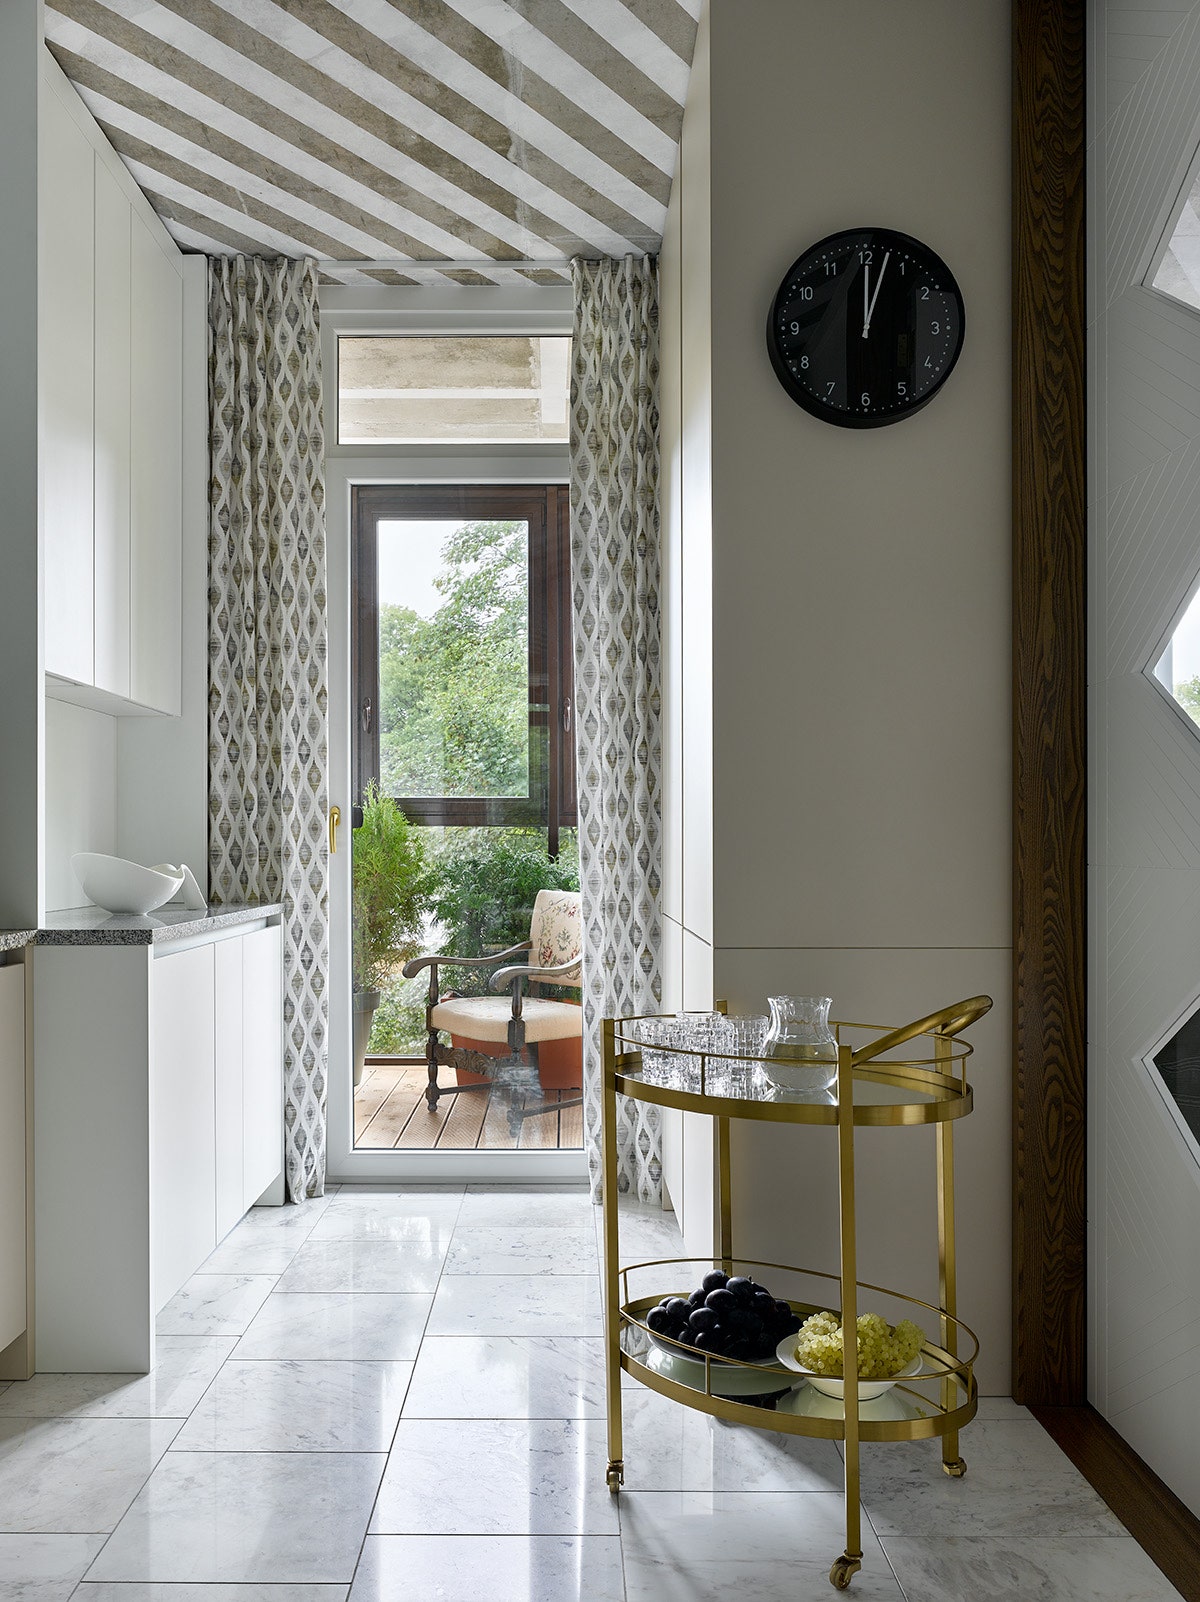 Фрагмент кухни. Кухня и двери РераНоме стул винтажный сервировочный столик “ПарадизДекор” часы IKEA.